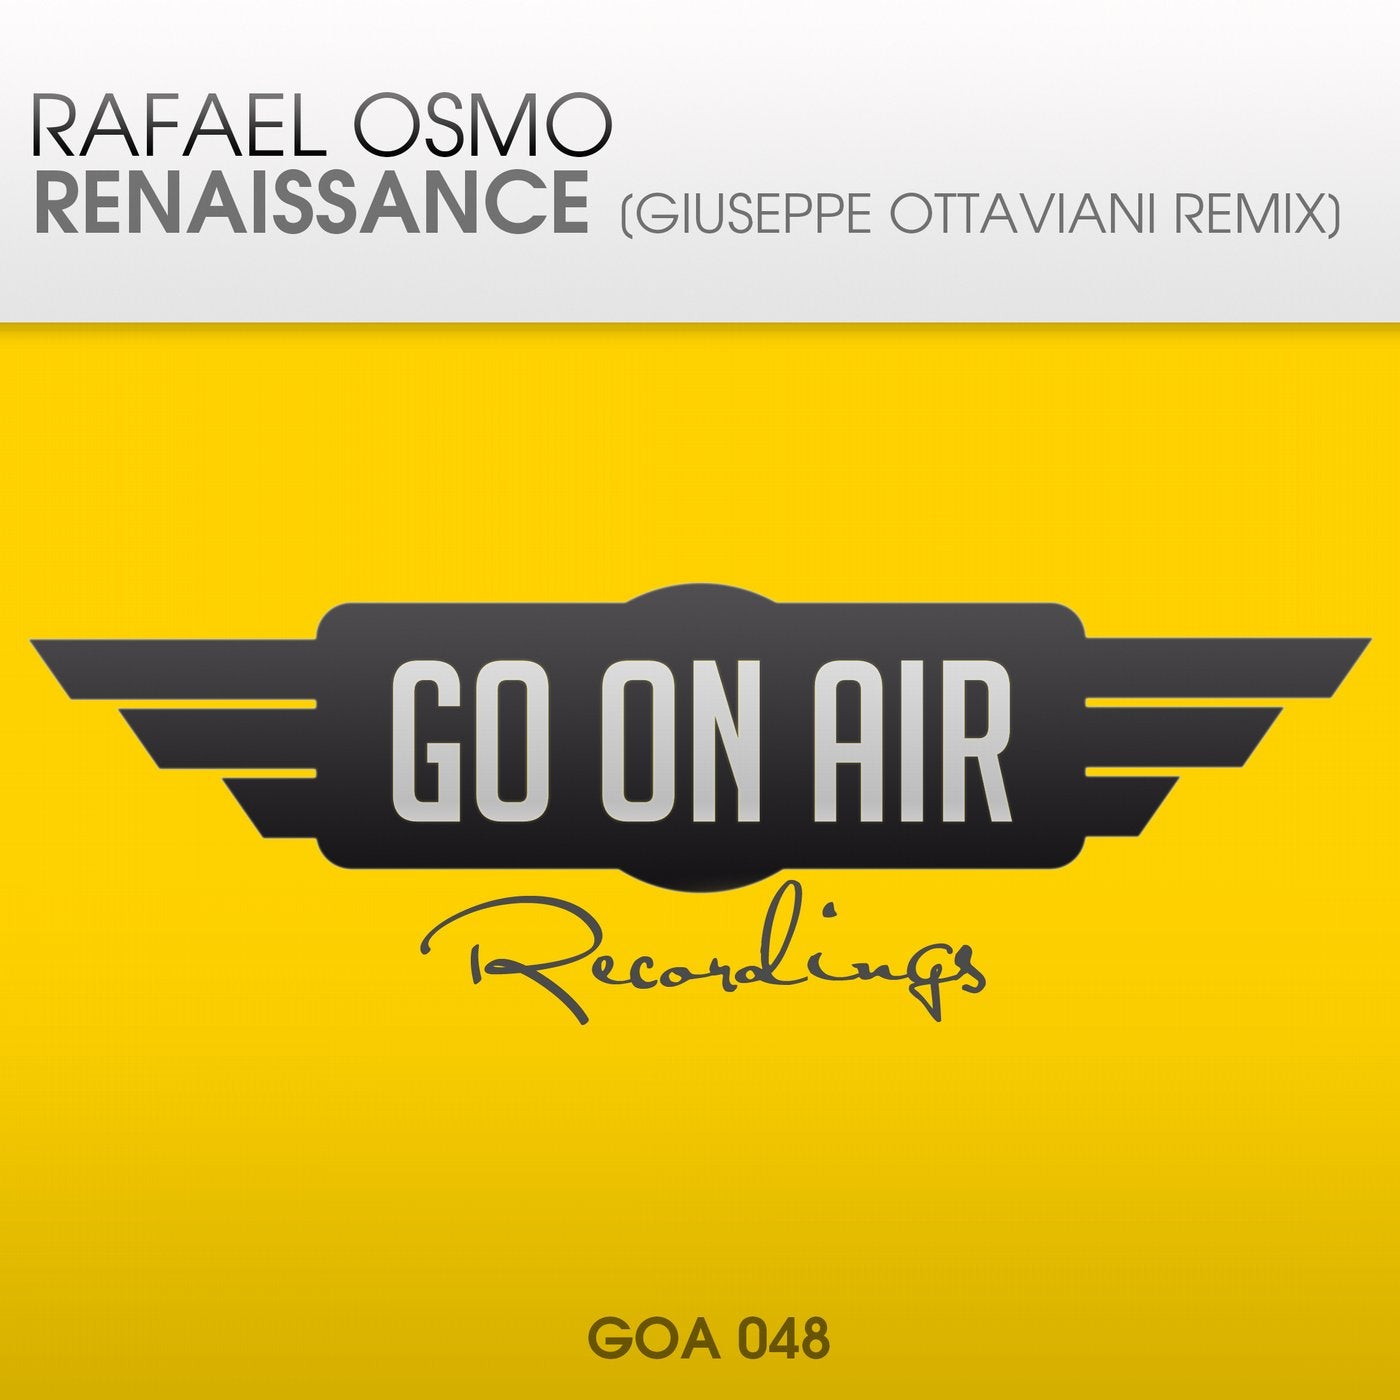 Renaissance - Giuseppe Ottaviani Remix